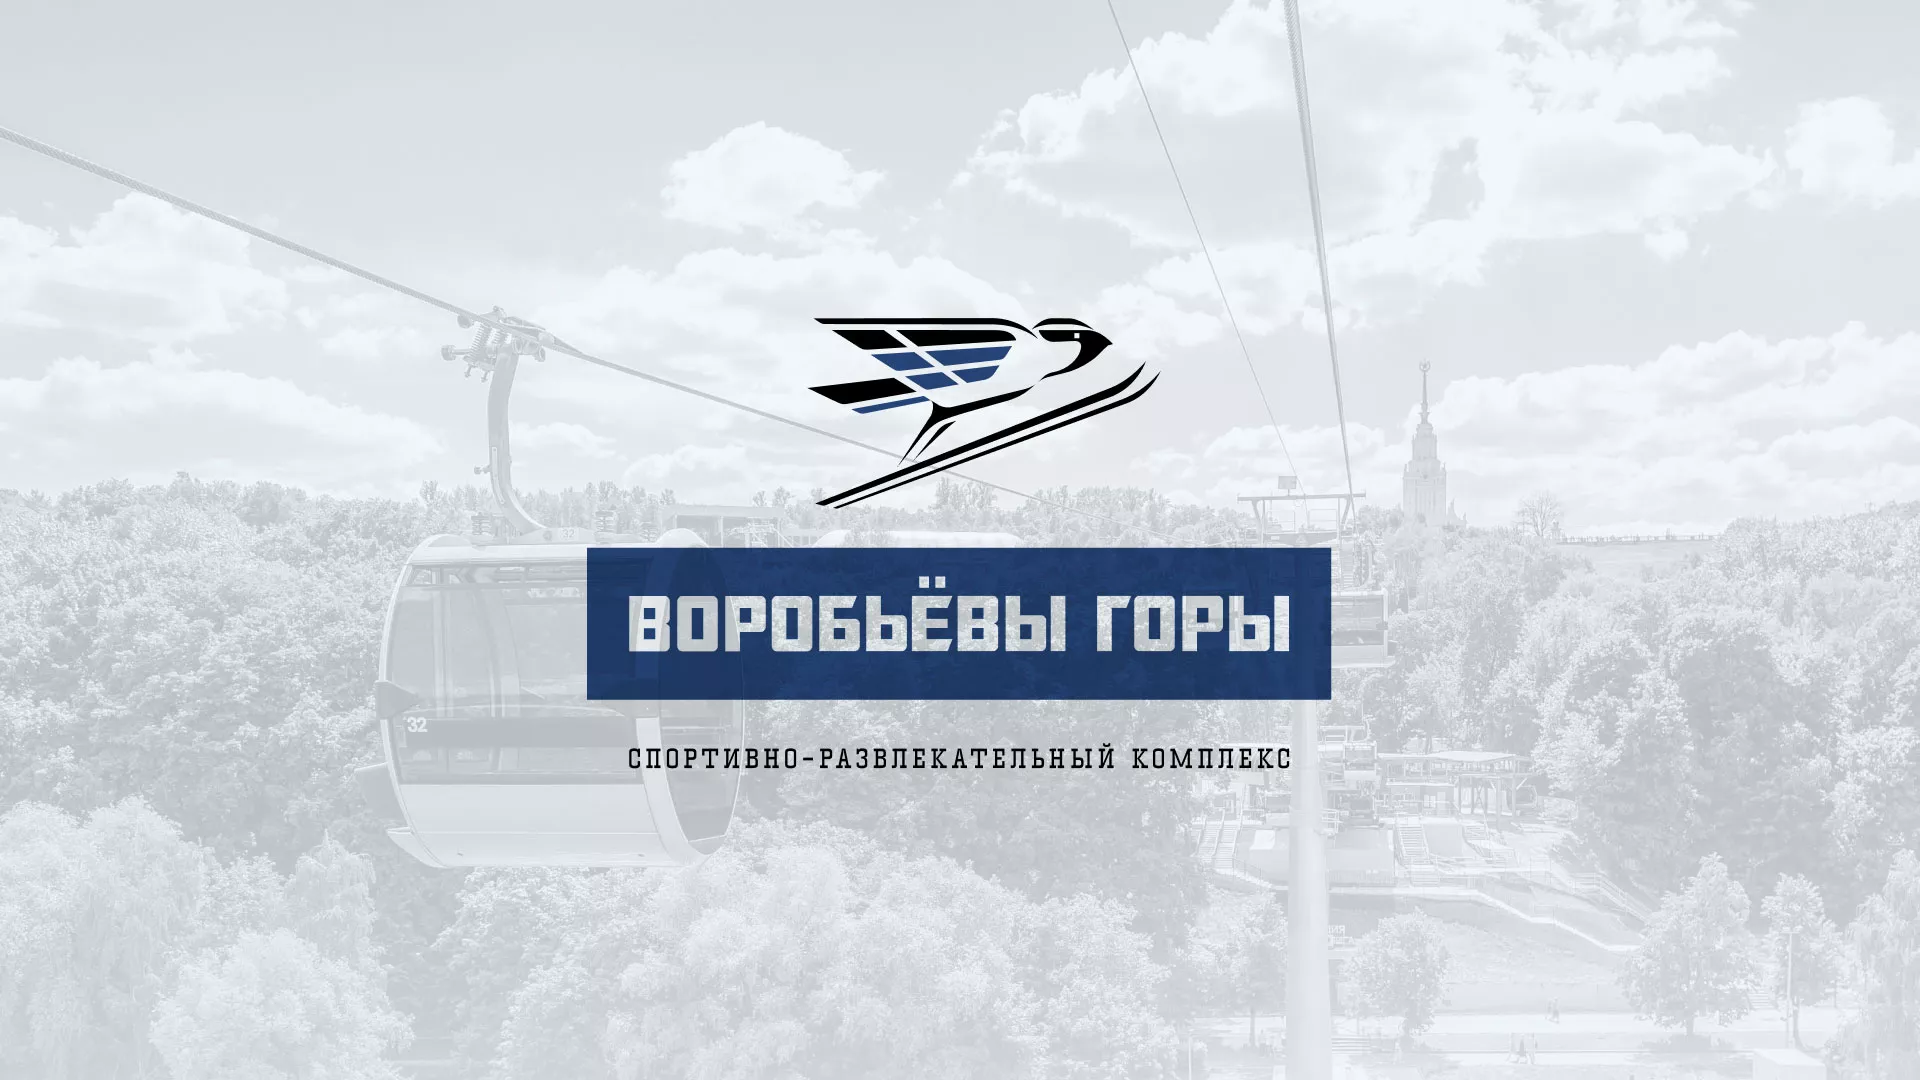 Разработка сайта в Щучье для спортивно-развлекательного комплекса «Воробьёвы горы»